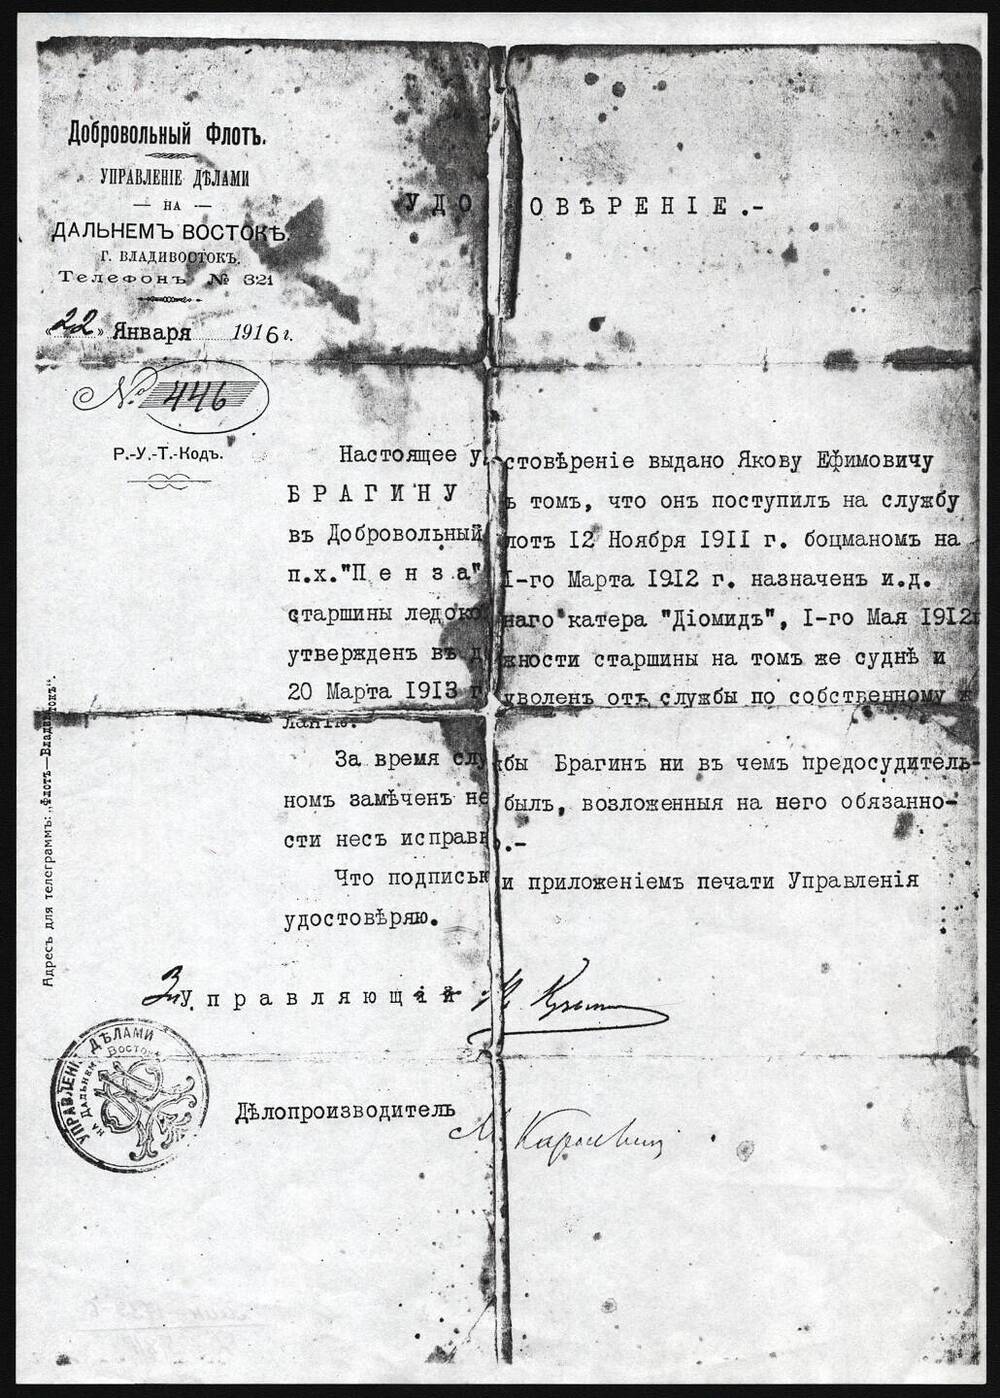 Удостоверение №446 Брагиной Яковы Ефимовны.